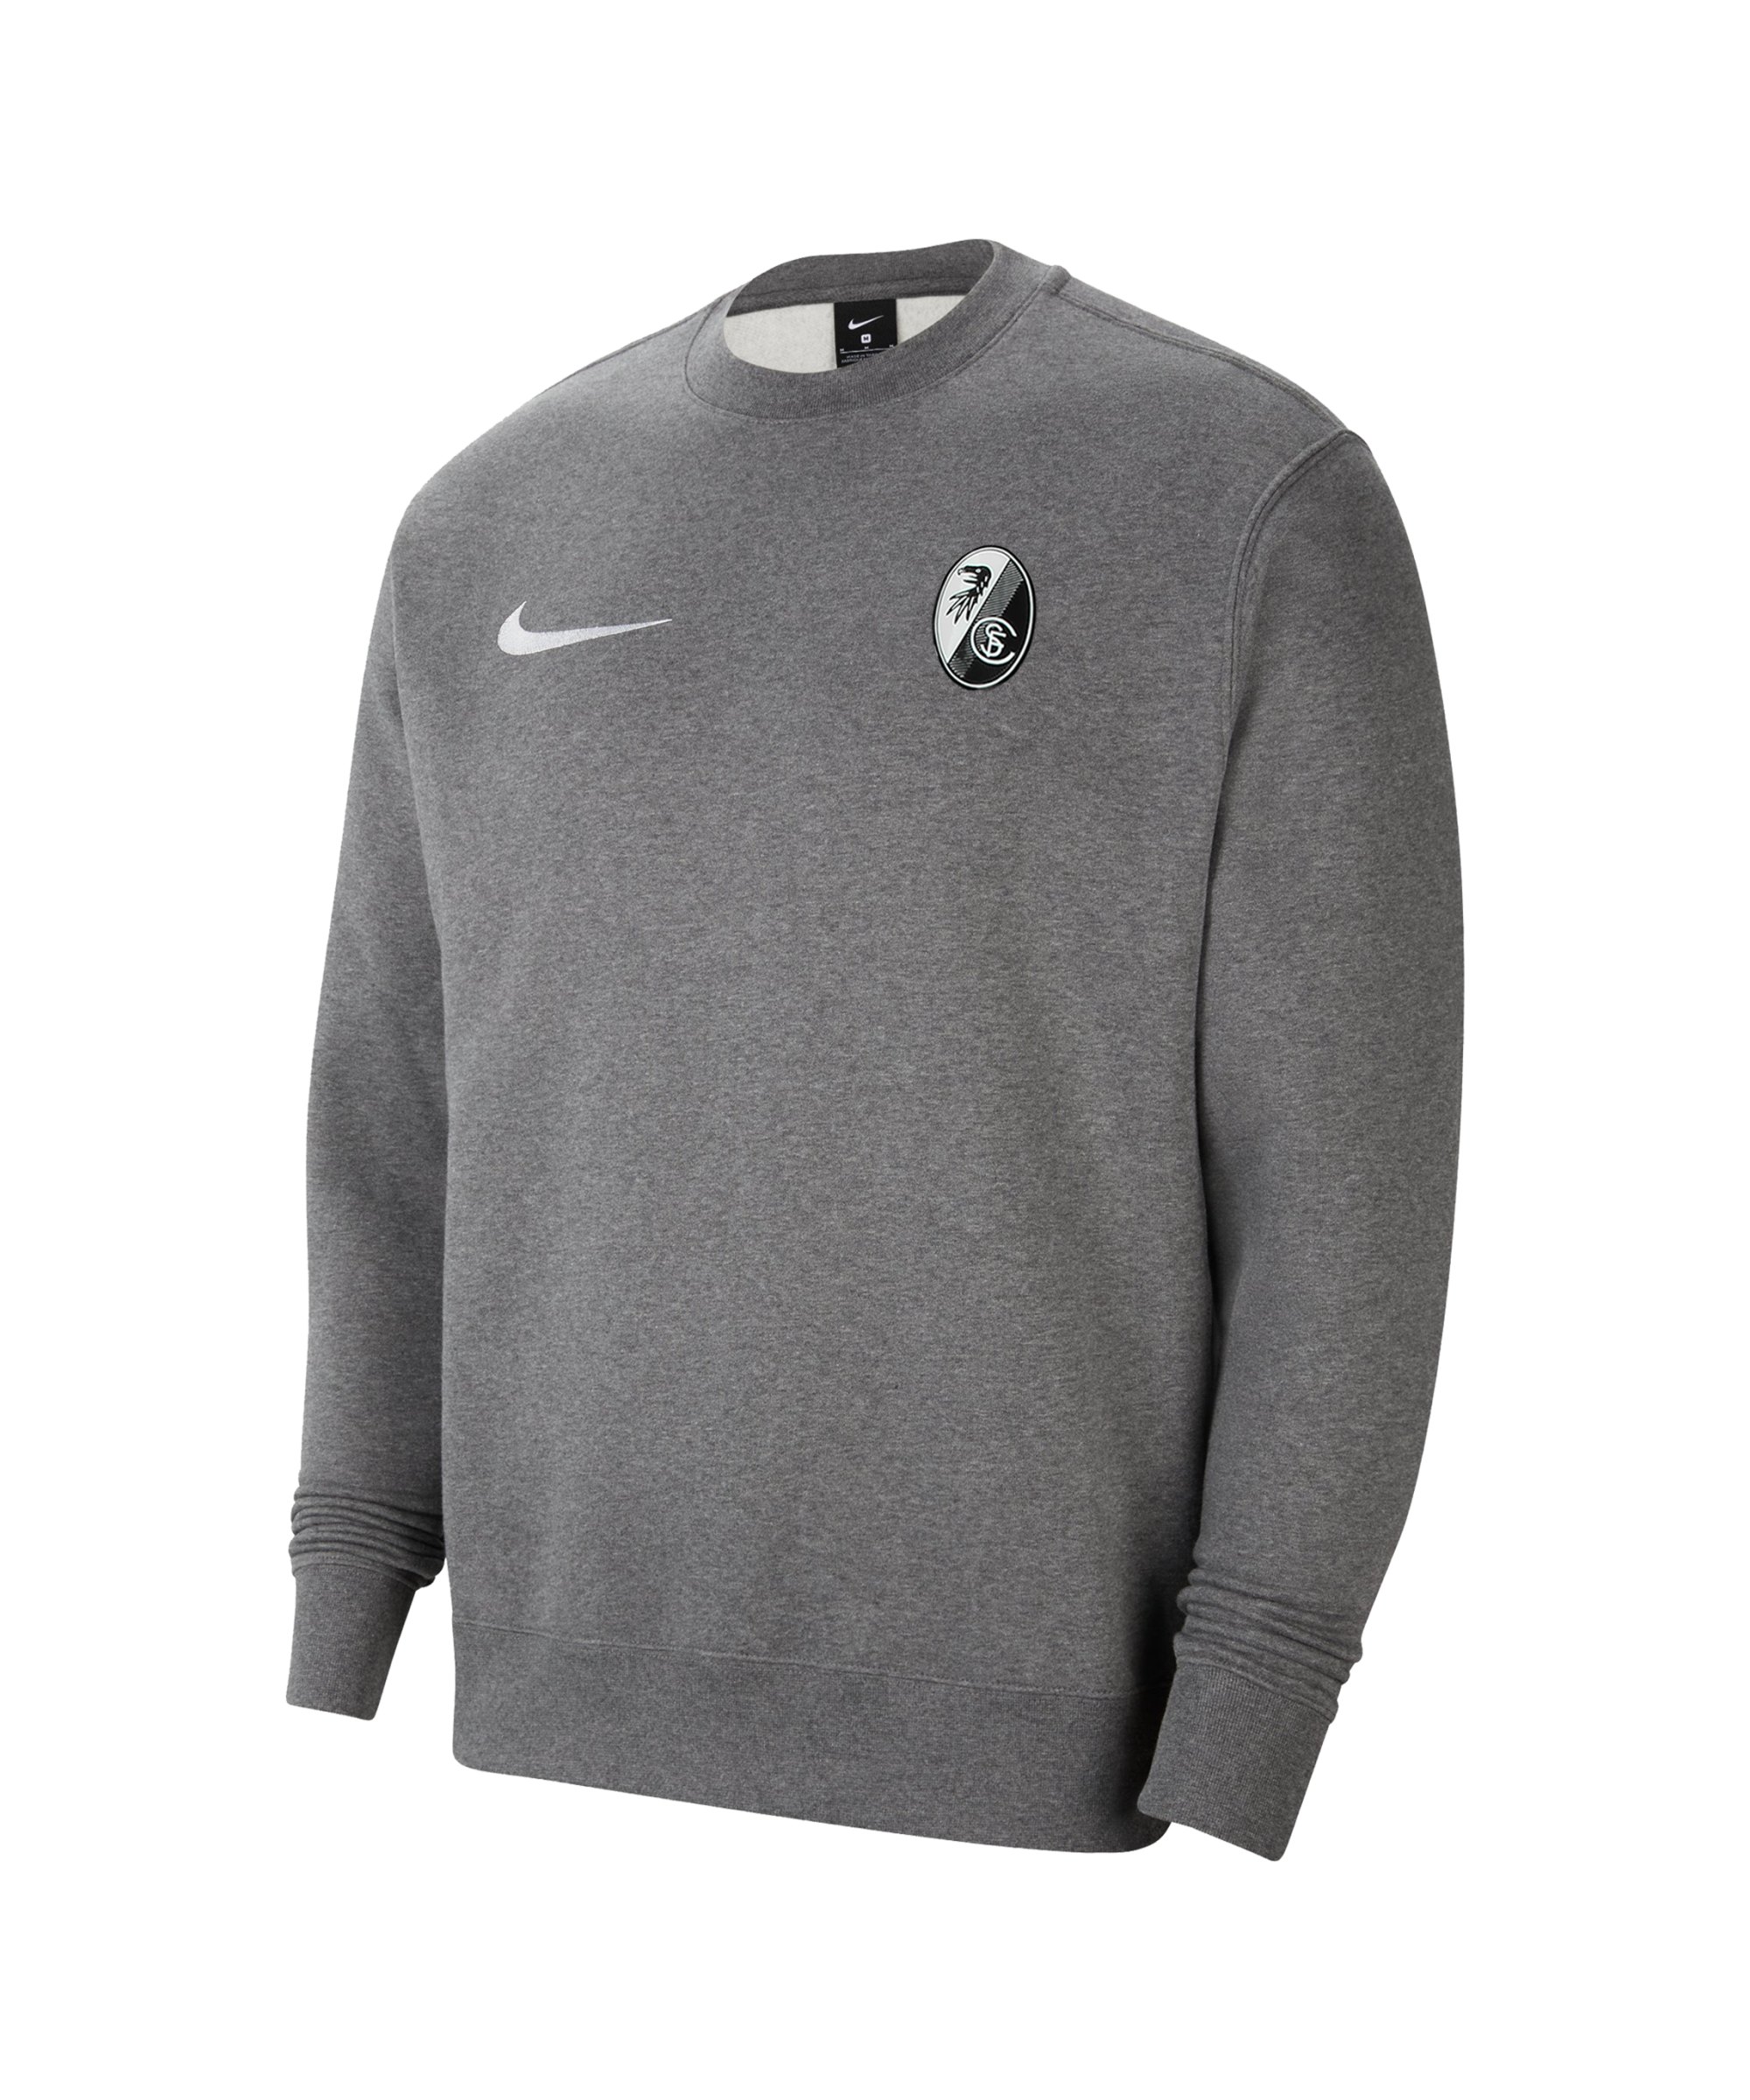 Nike SC Freiburg Freizeit Sweatshirt Grau F071 - grau